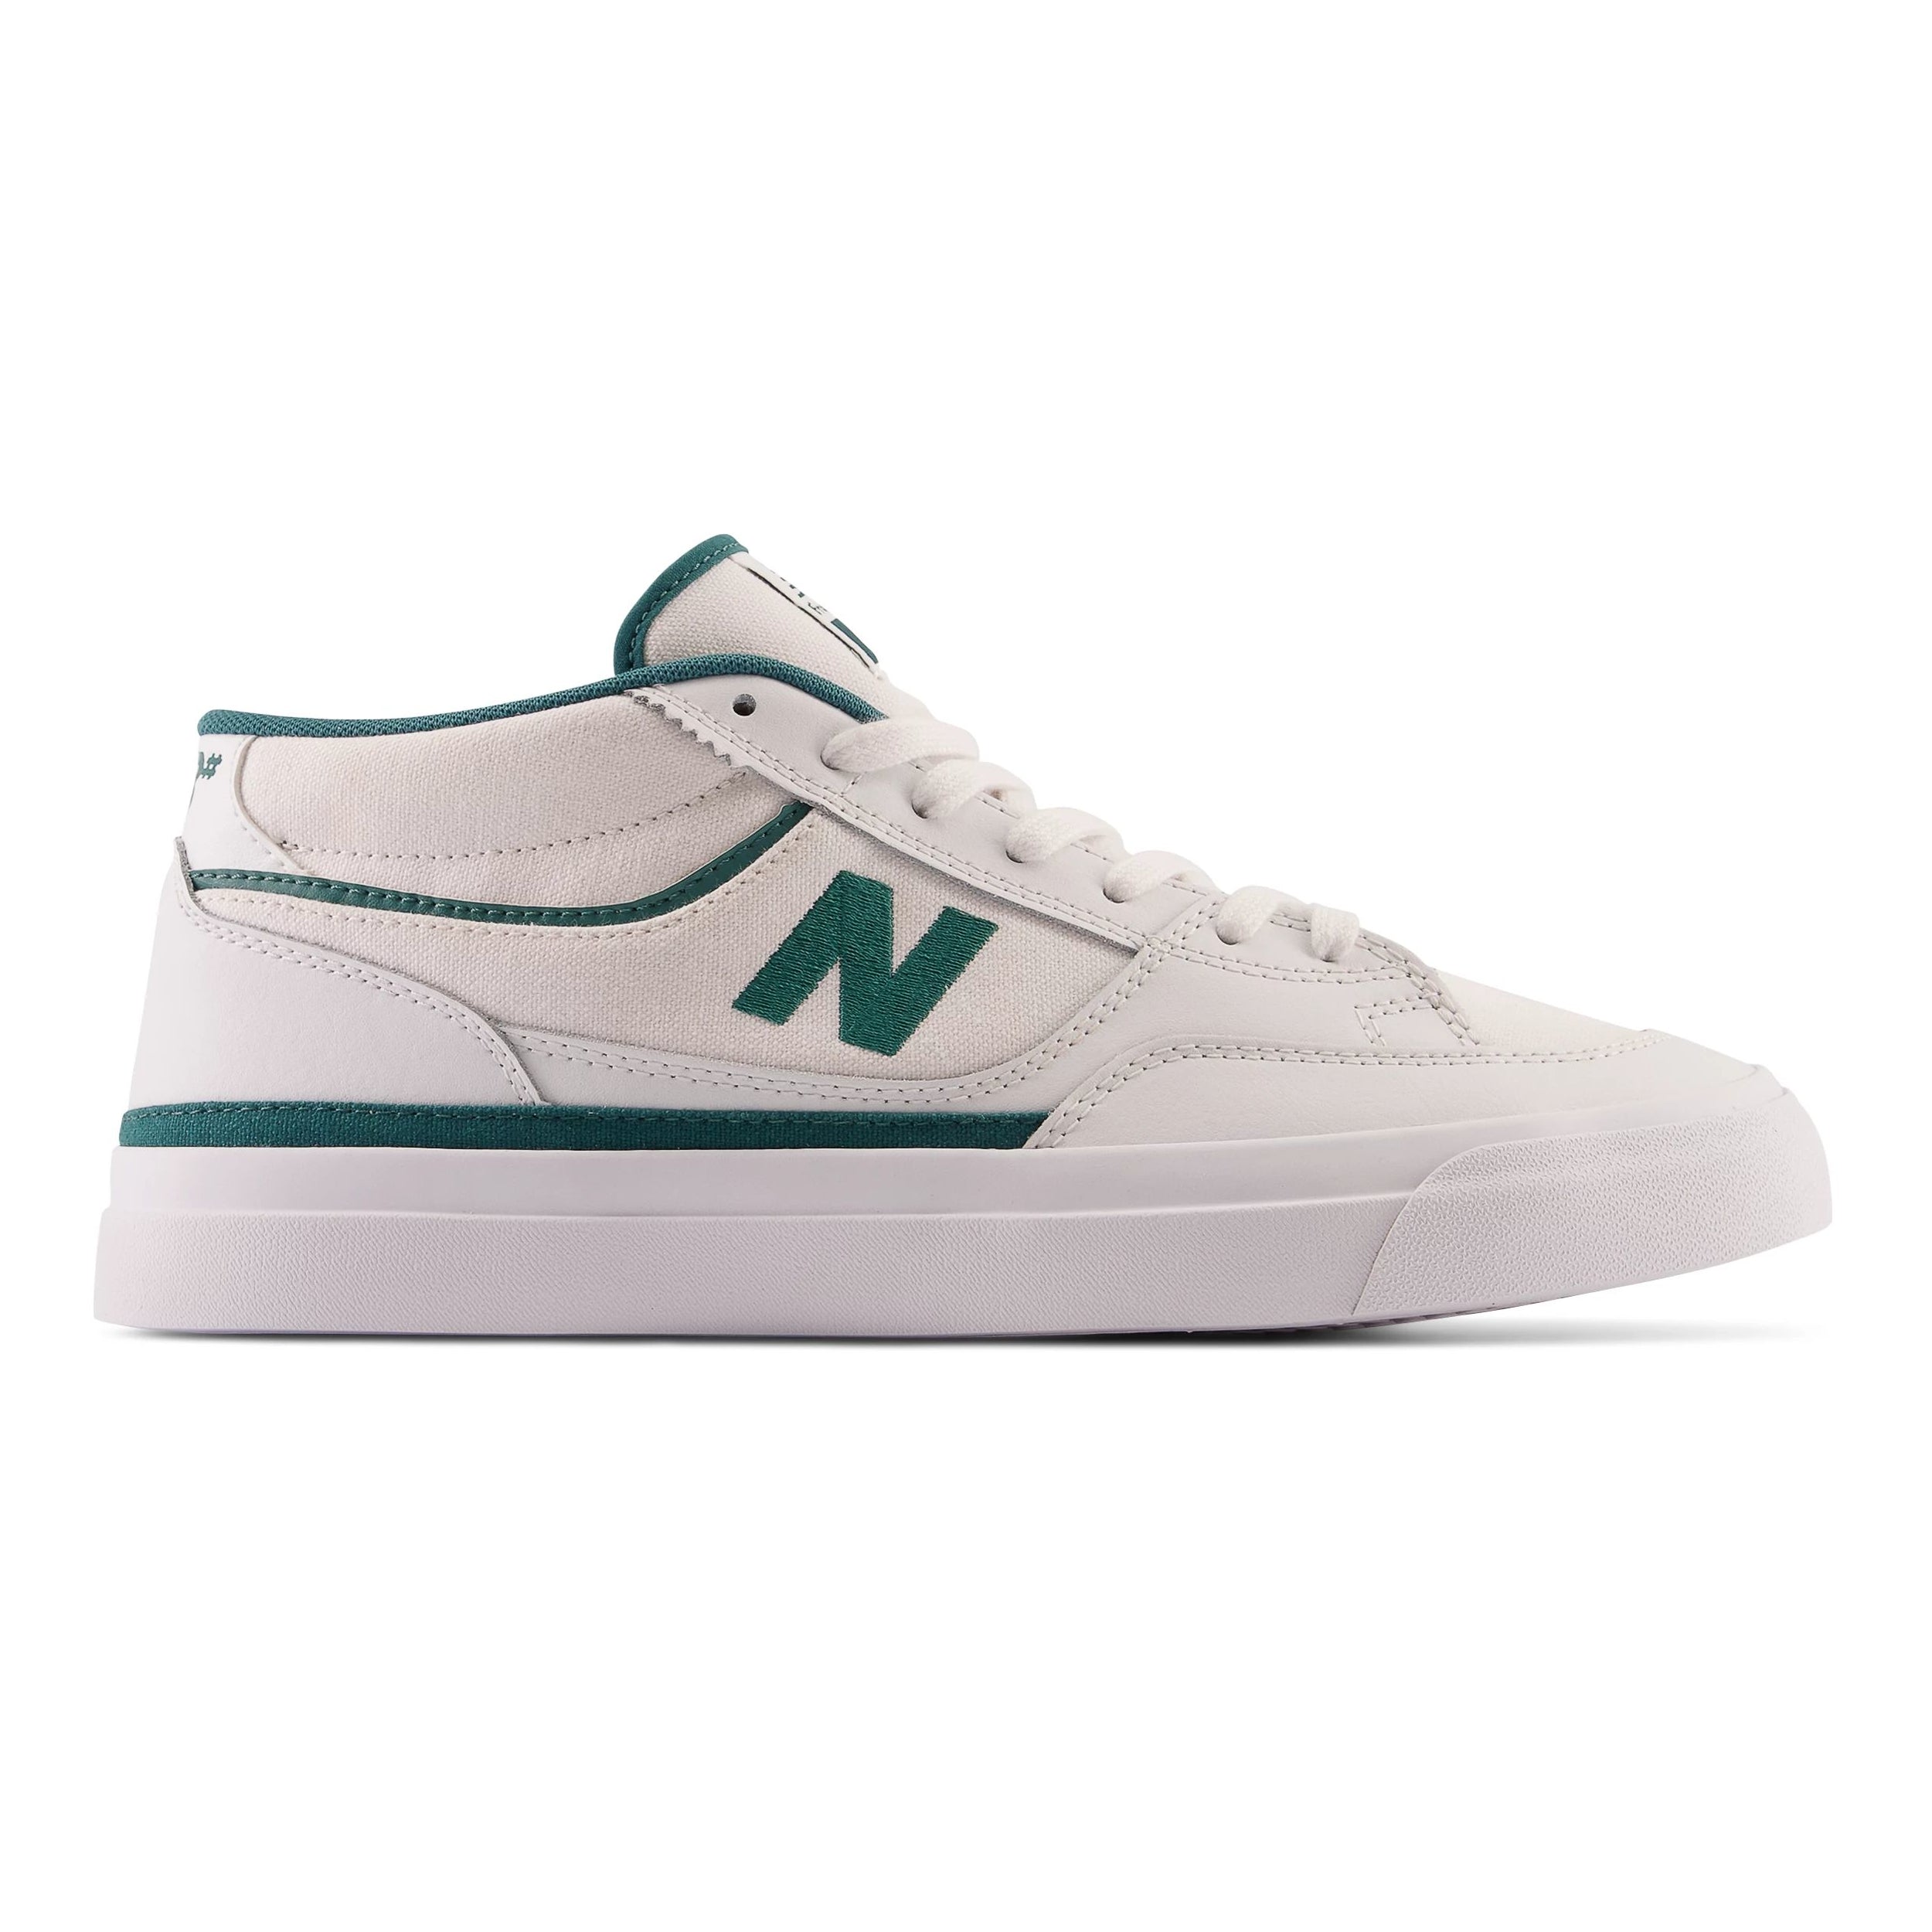 NM417 White Franky Villani Pro NB Numeric Skate Shoe